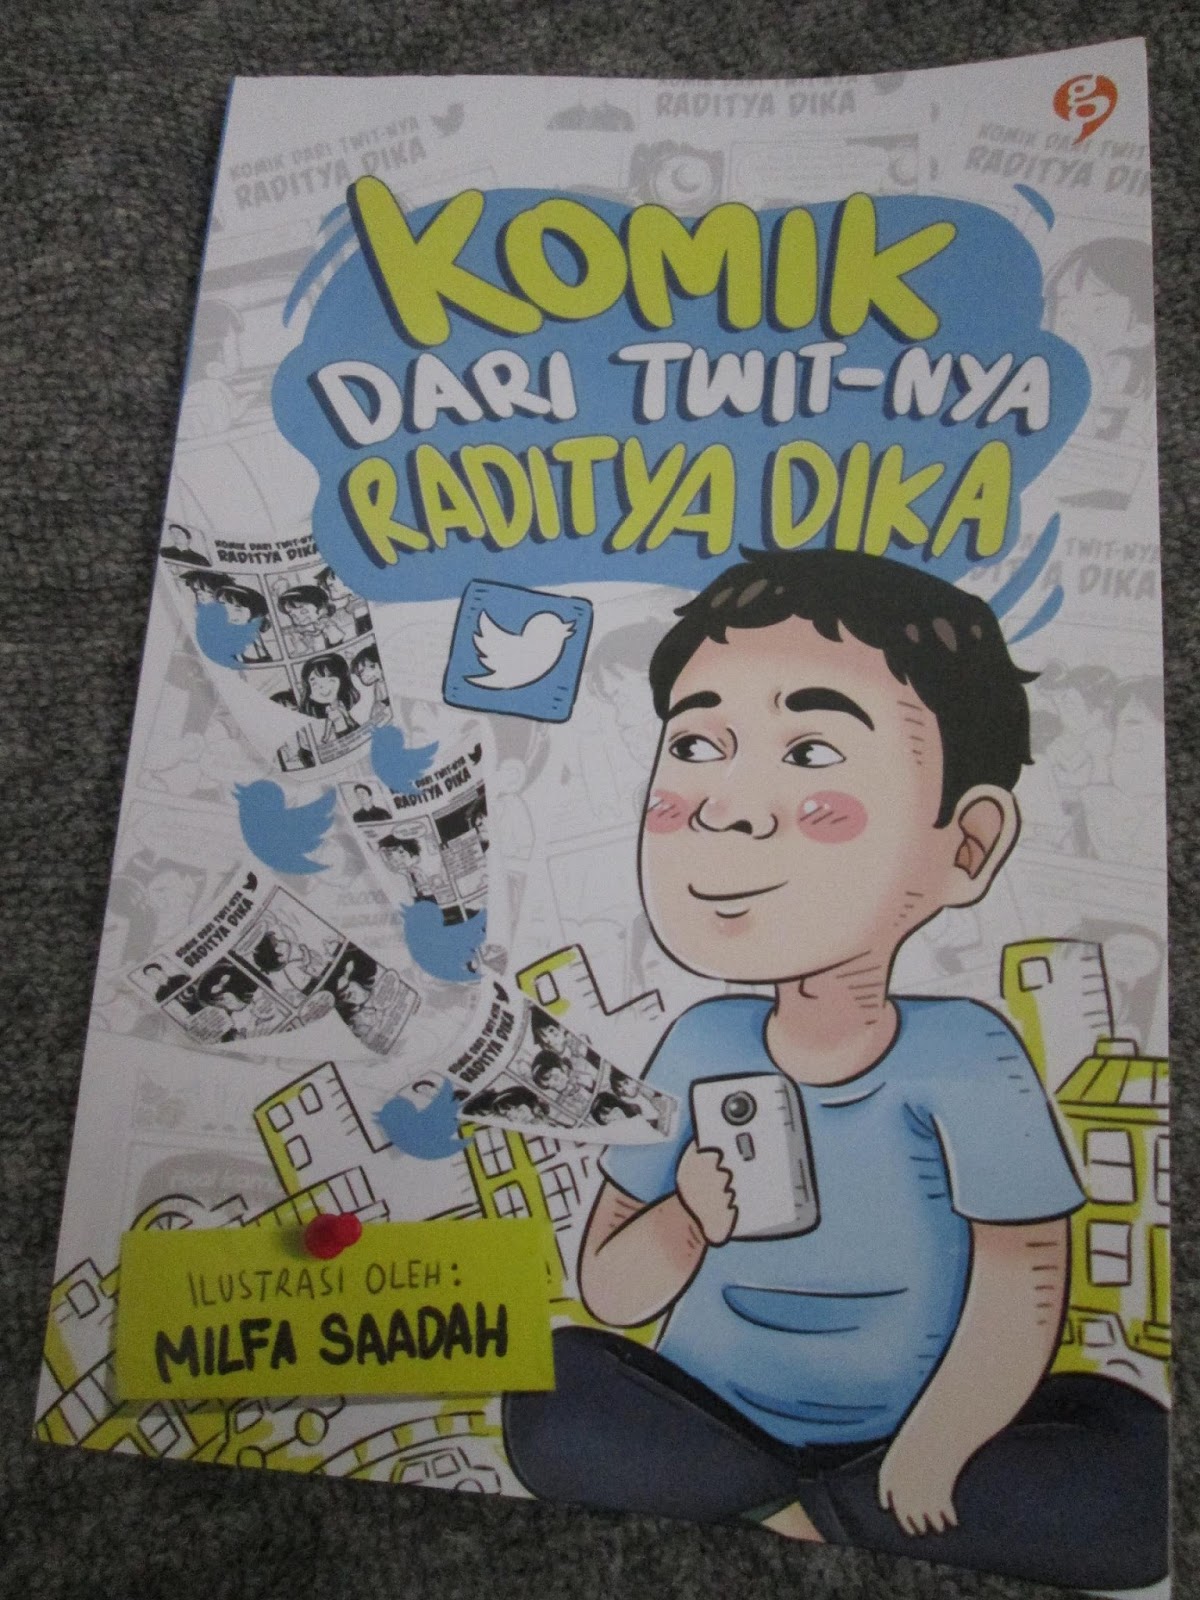 Review Komik Dari Twit Nya Raditya Dika Baca Buku Temani Harimu